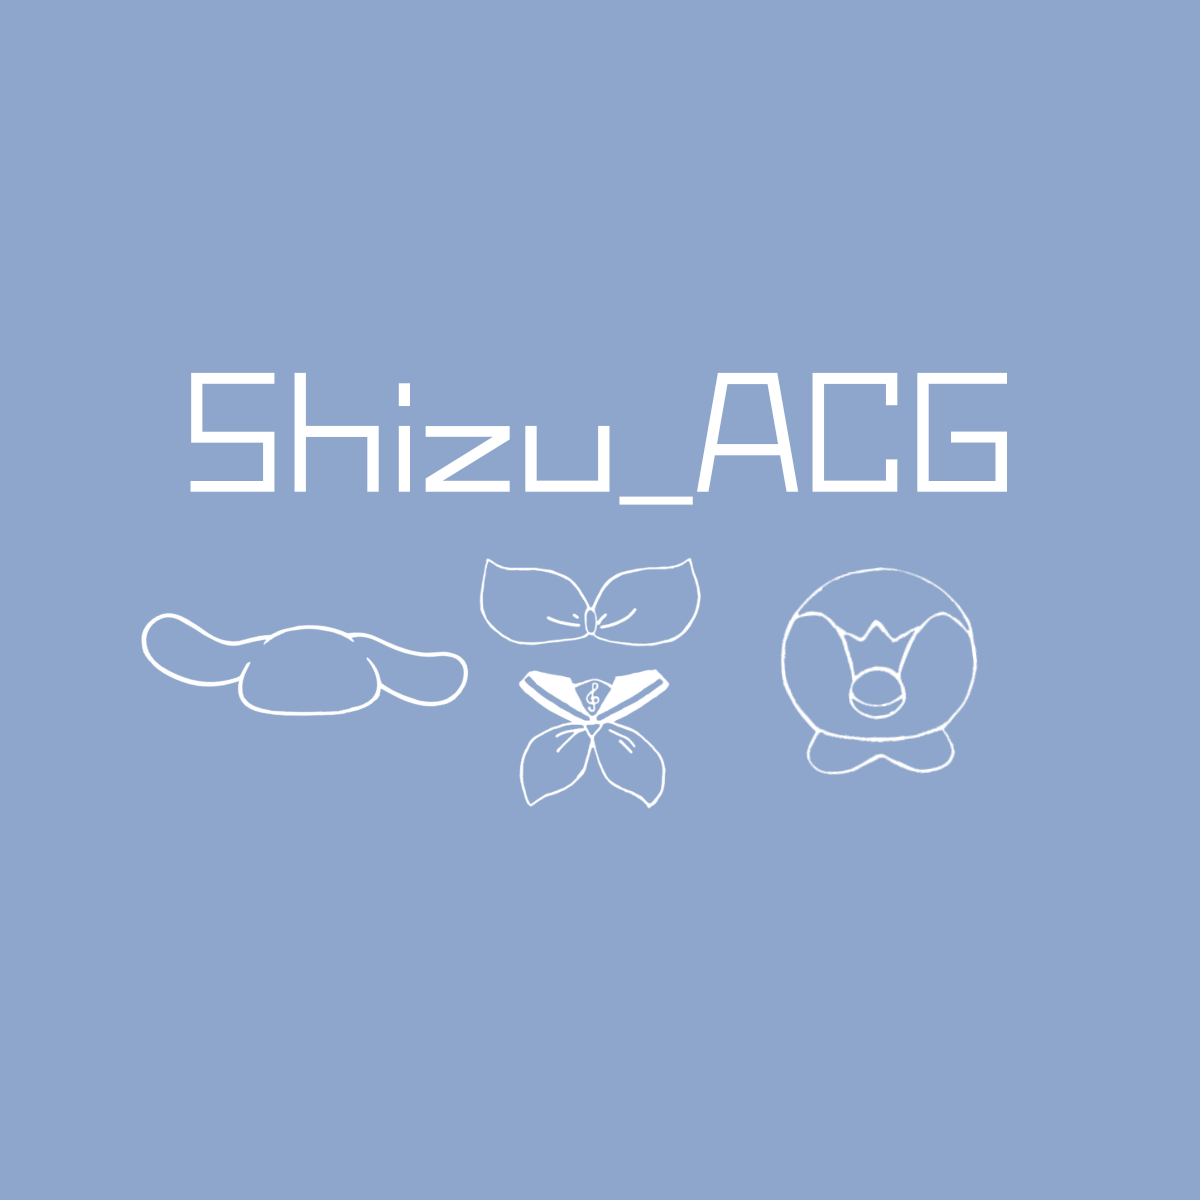 Shizu_ACG